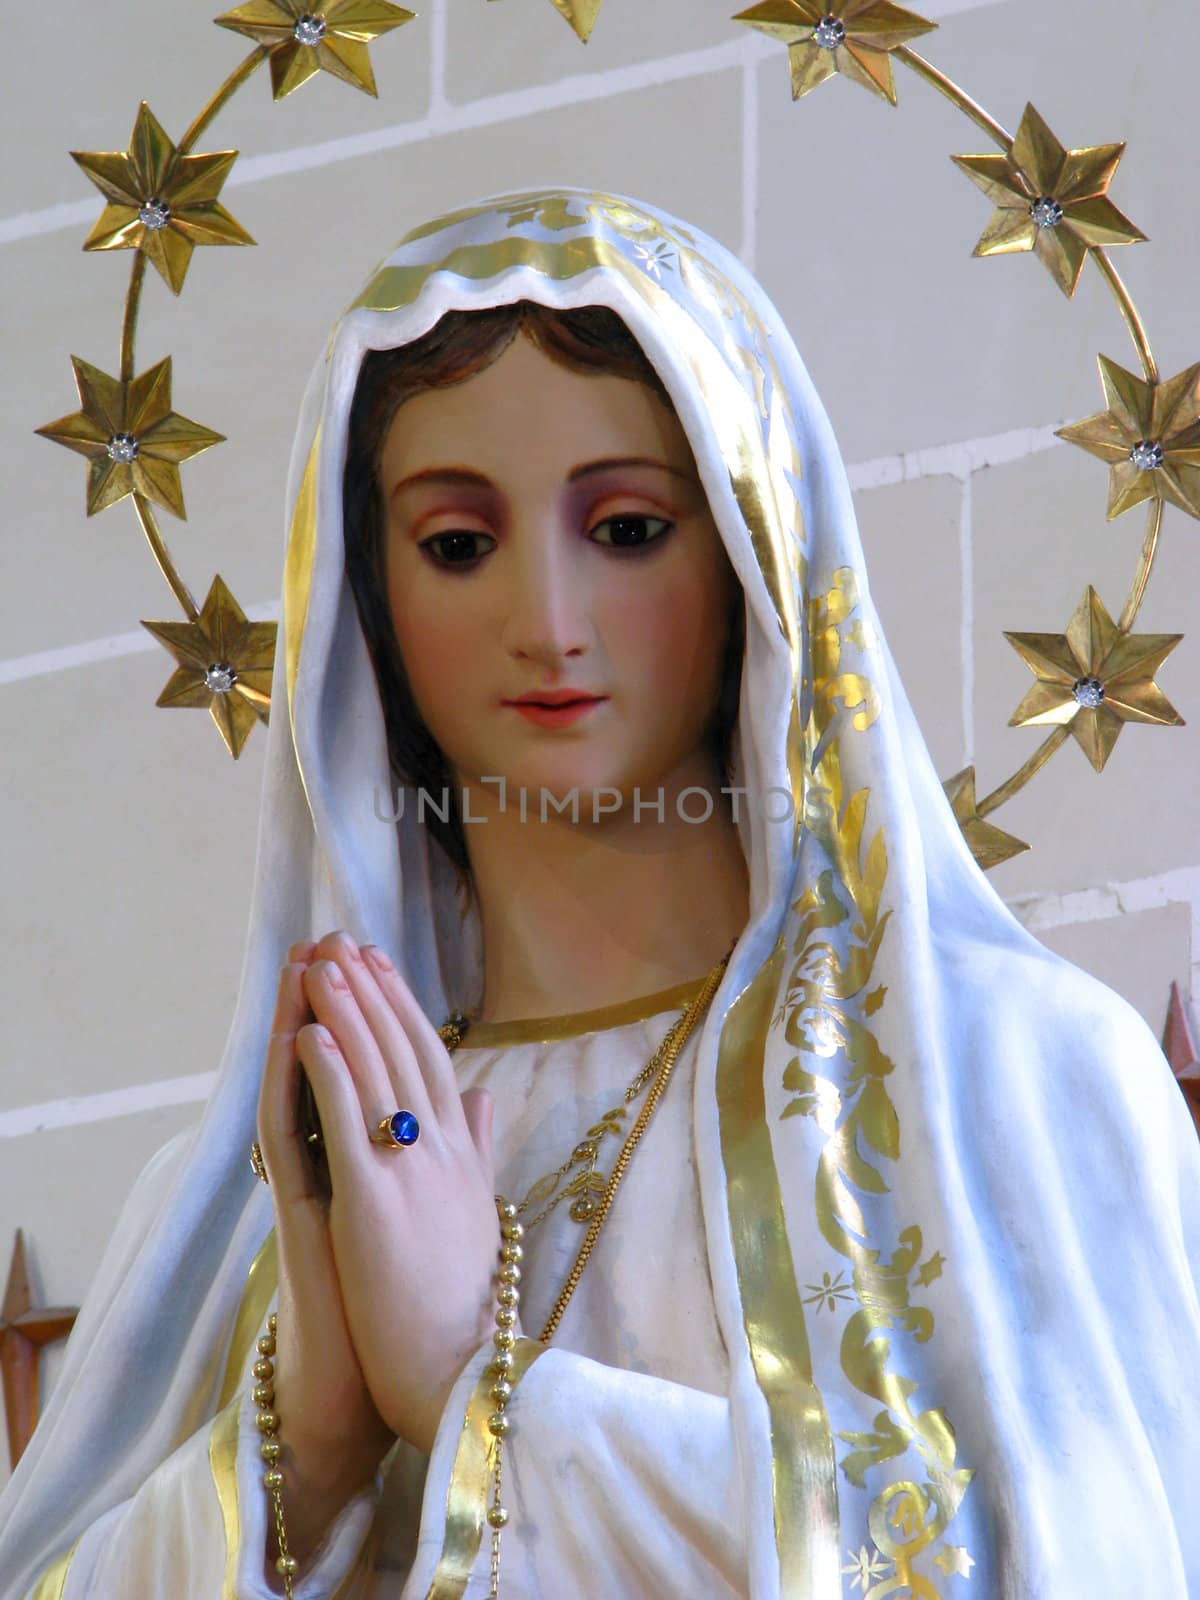 Nostra Signora di Fatima by fajjenzu